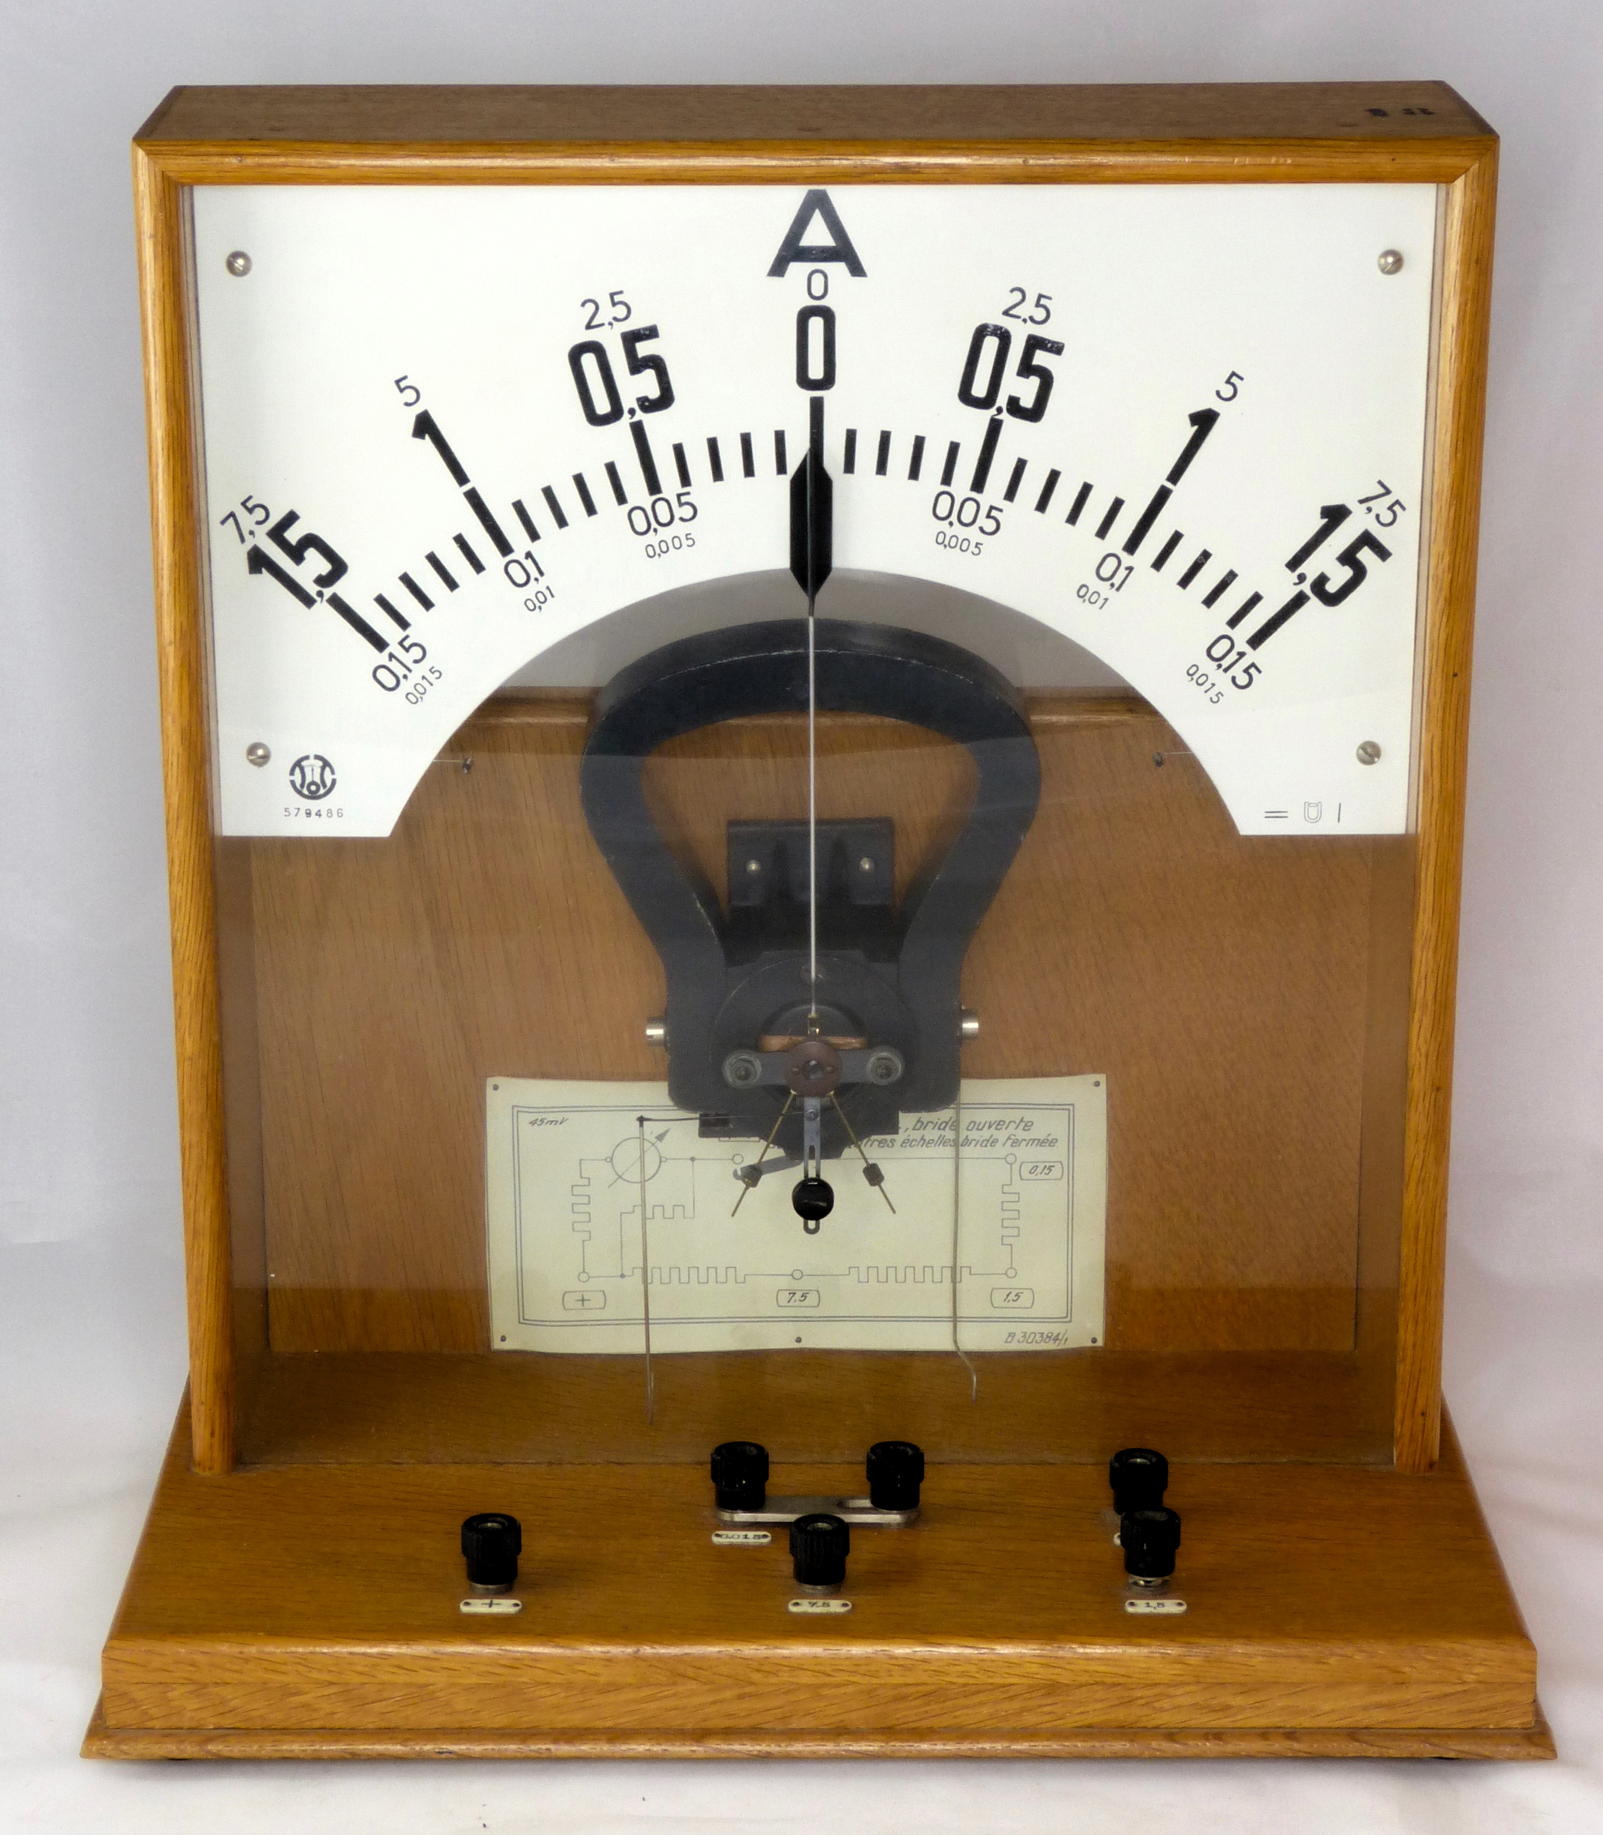 Ampèremètre de démonstration
(plusieurs gammes, zéro centré)